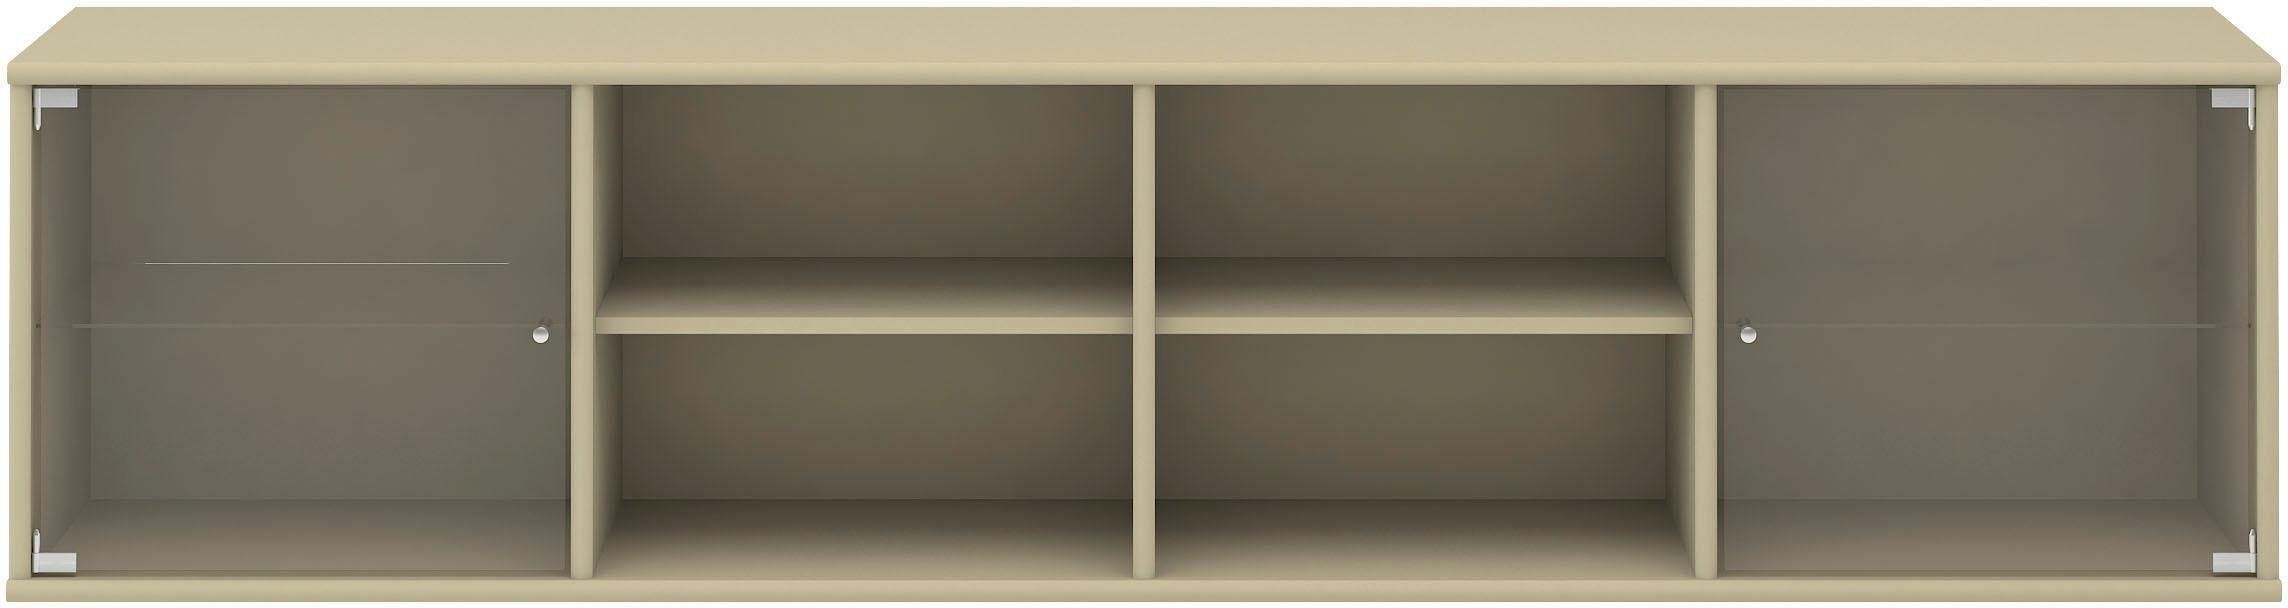 Hammel Furniture Regal Mistral, Hochwertig Lowboard, hängend/stehend montierbar, mit zwei Glastüren, B: 177 cm, lowboard, anpassungsbar Designmöbel beige